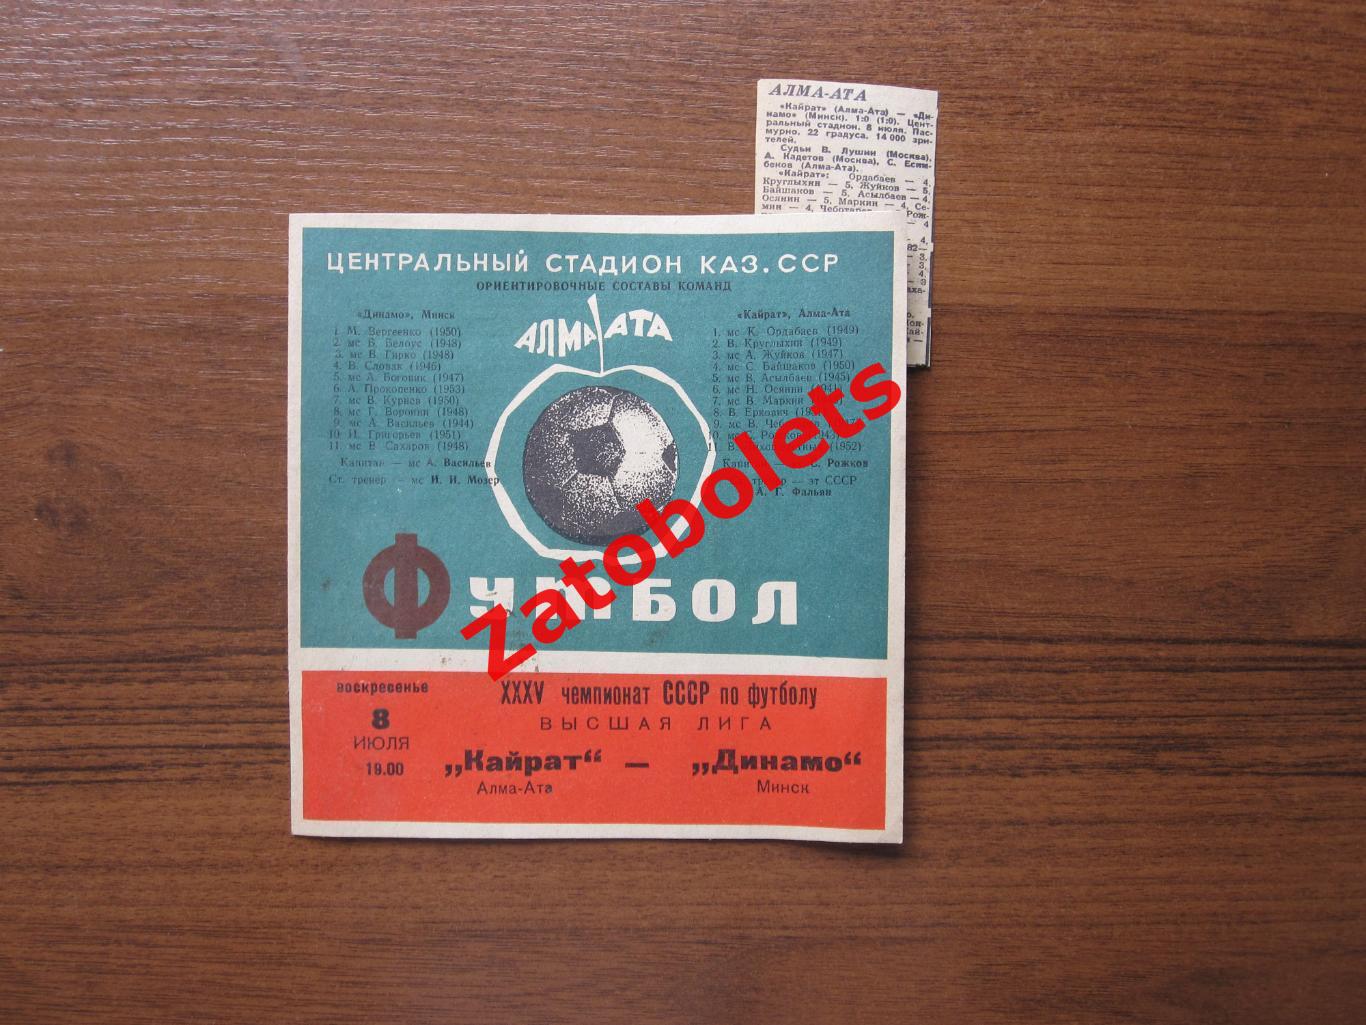 Кайрат Алма-Ата - Динамо Минск 1973 + отчет